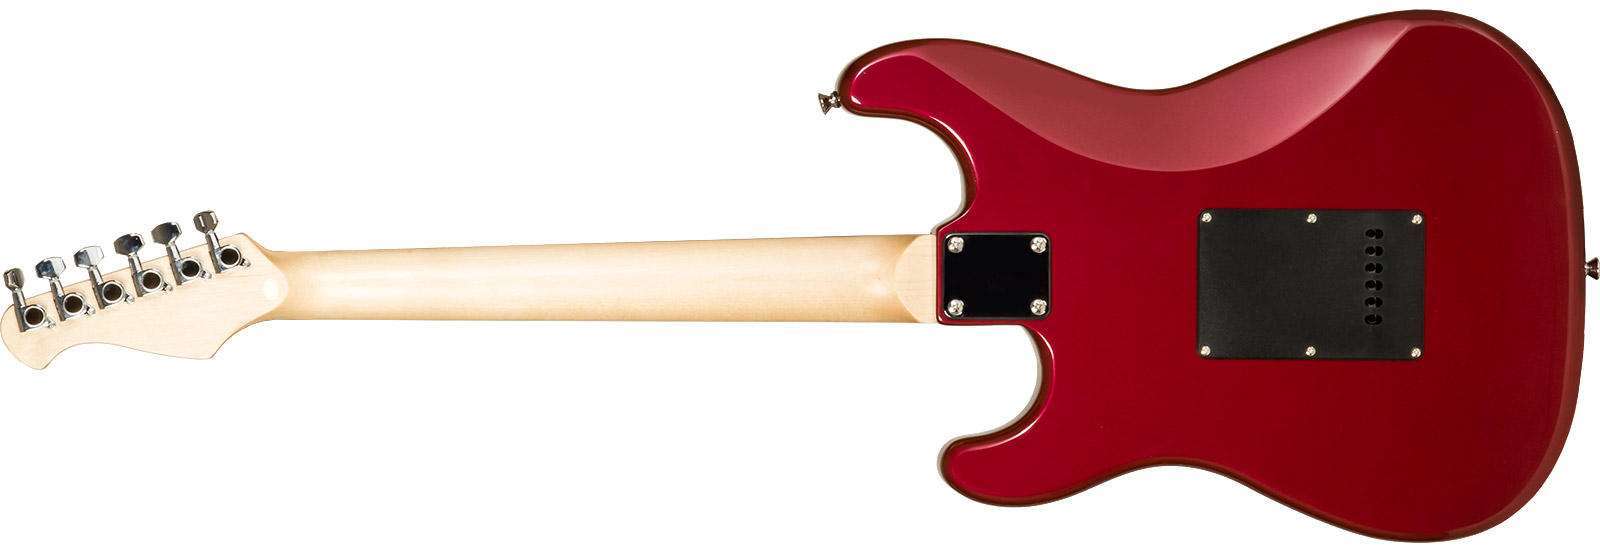 Eastone Str70t 3s Trem Pur - Dark Red - E-Gitarre in Str-Form - Variation 6